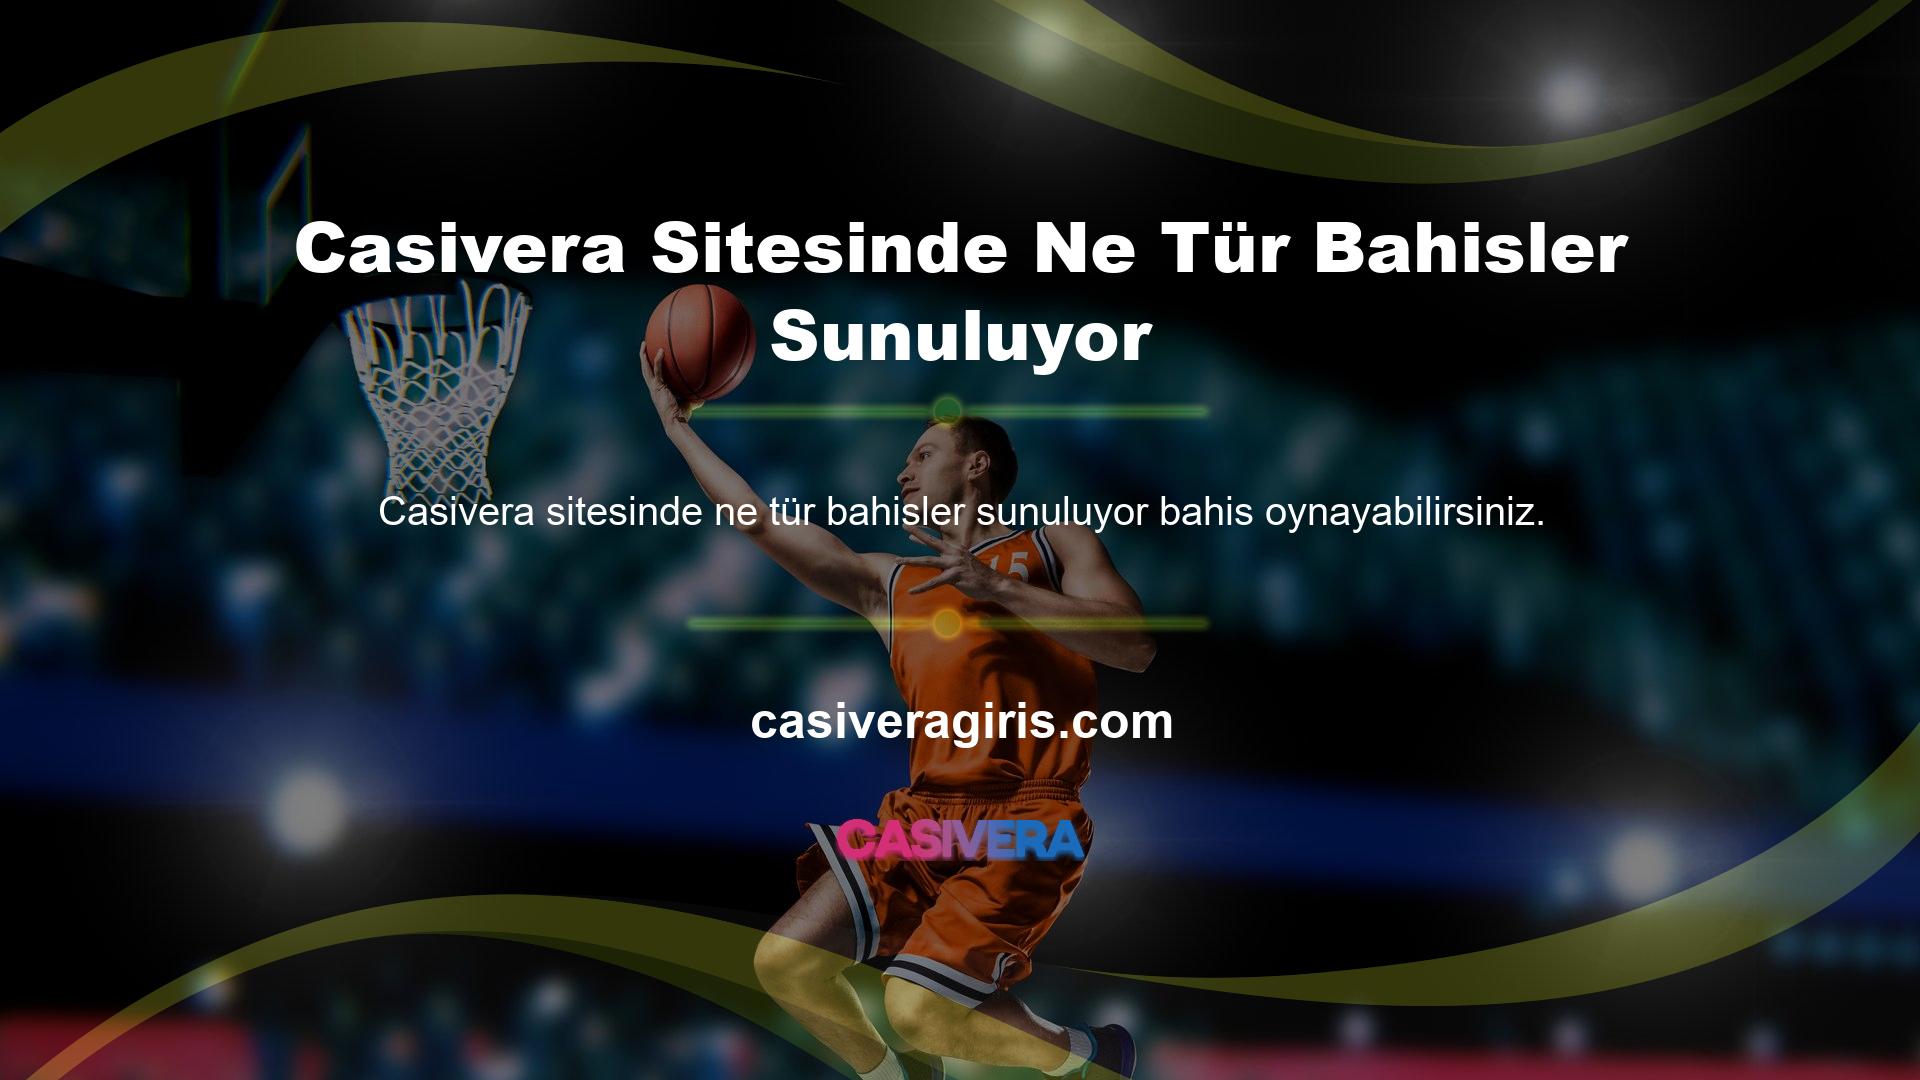 Spor bahisleri, casino, canlı bahis ve çeşitli oyun uygulamaları arasında Casivera web sitesinde sunulan bahis türleri, bahisçilere çok çeşitli seçenekler sunmaktadır